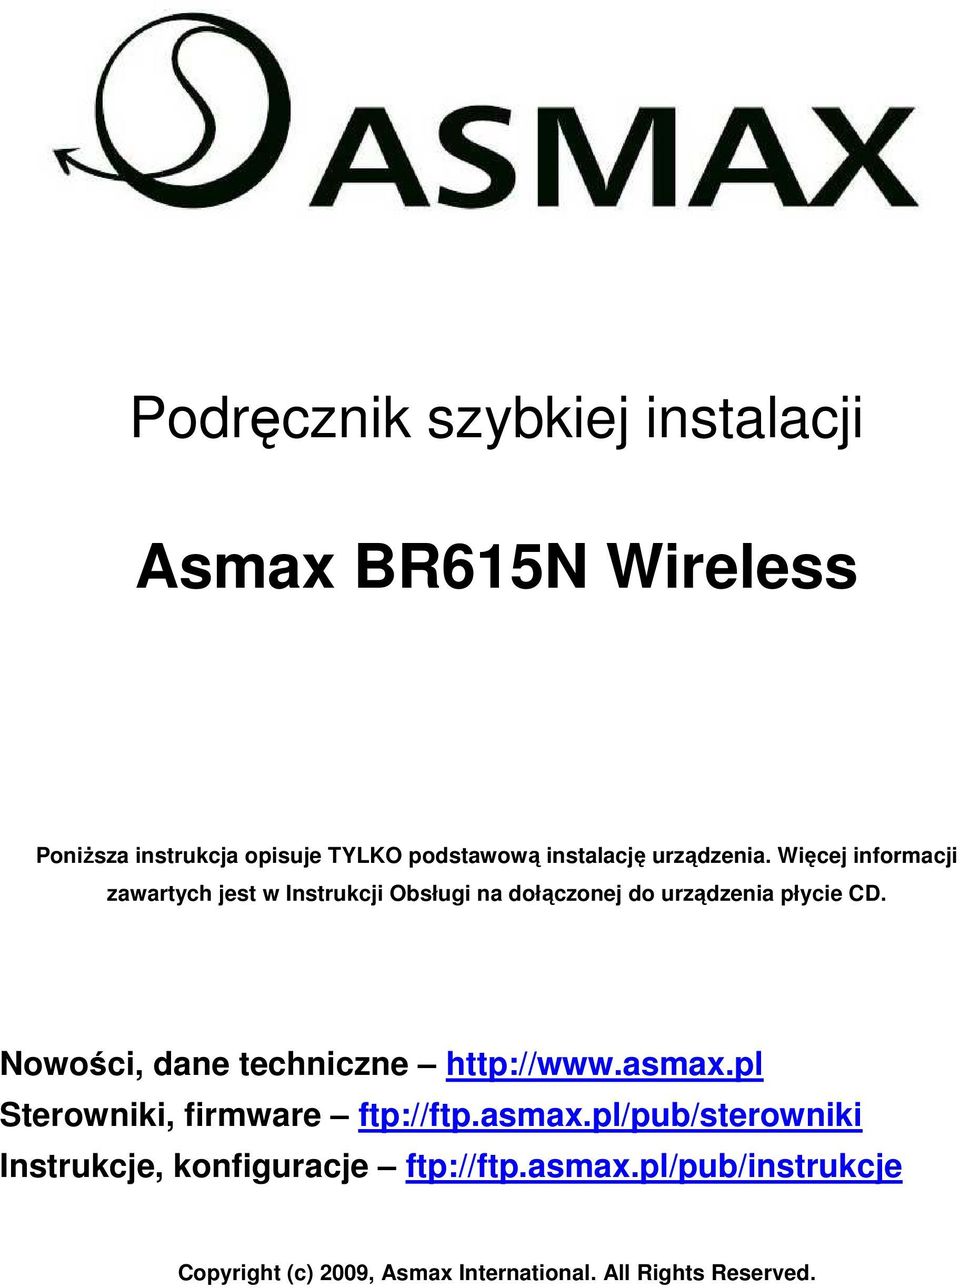 Nowości, dane techniczne http://www.asmax.pl Sterowniki, firmware ftp://ftp.asmax.pl/pub/sterowniki Instrukcje, konfiguracje ftp://ftp.